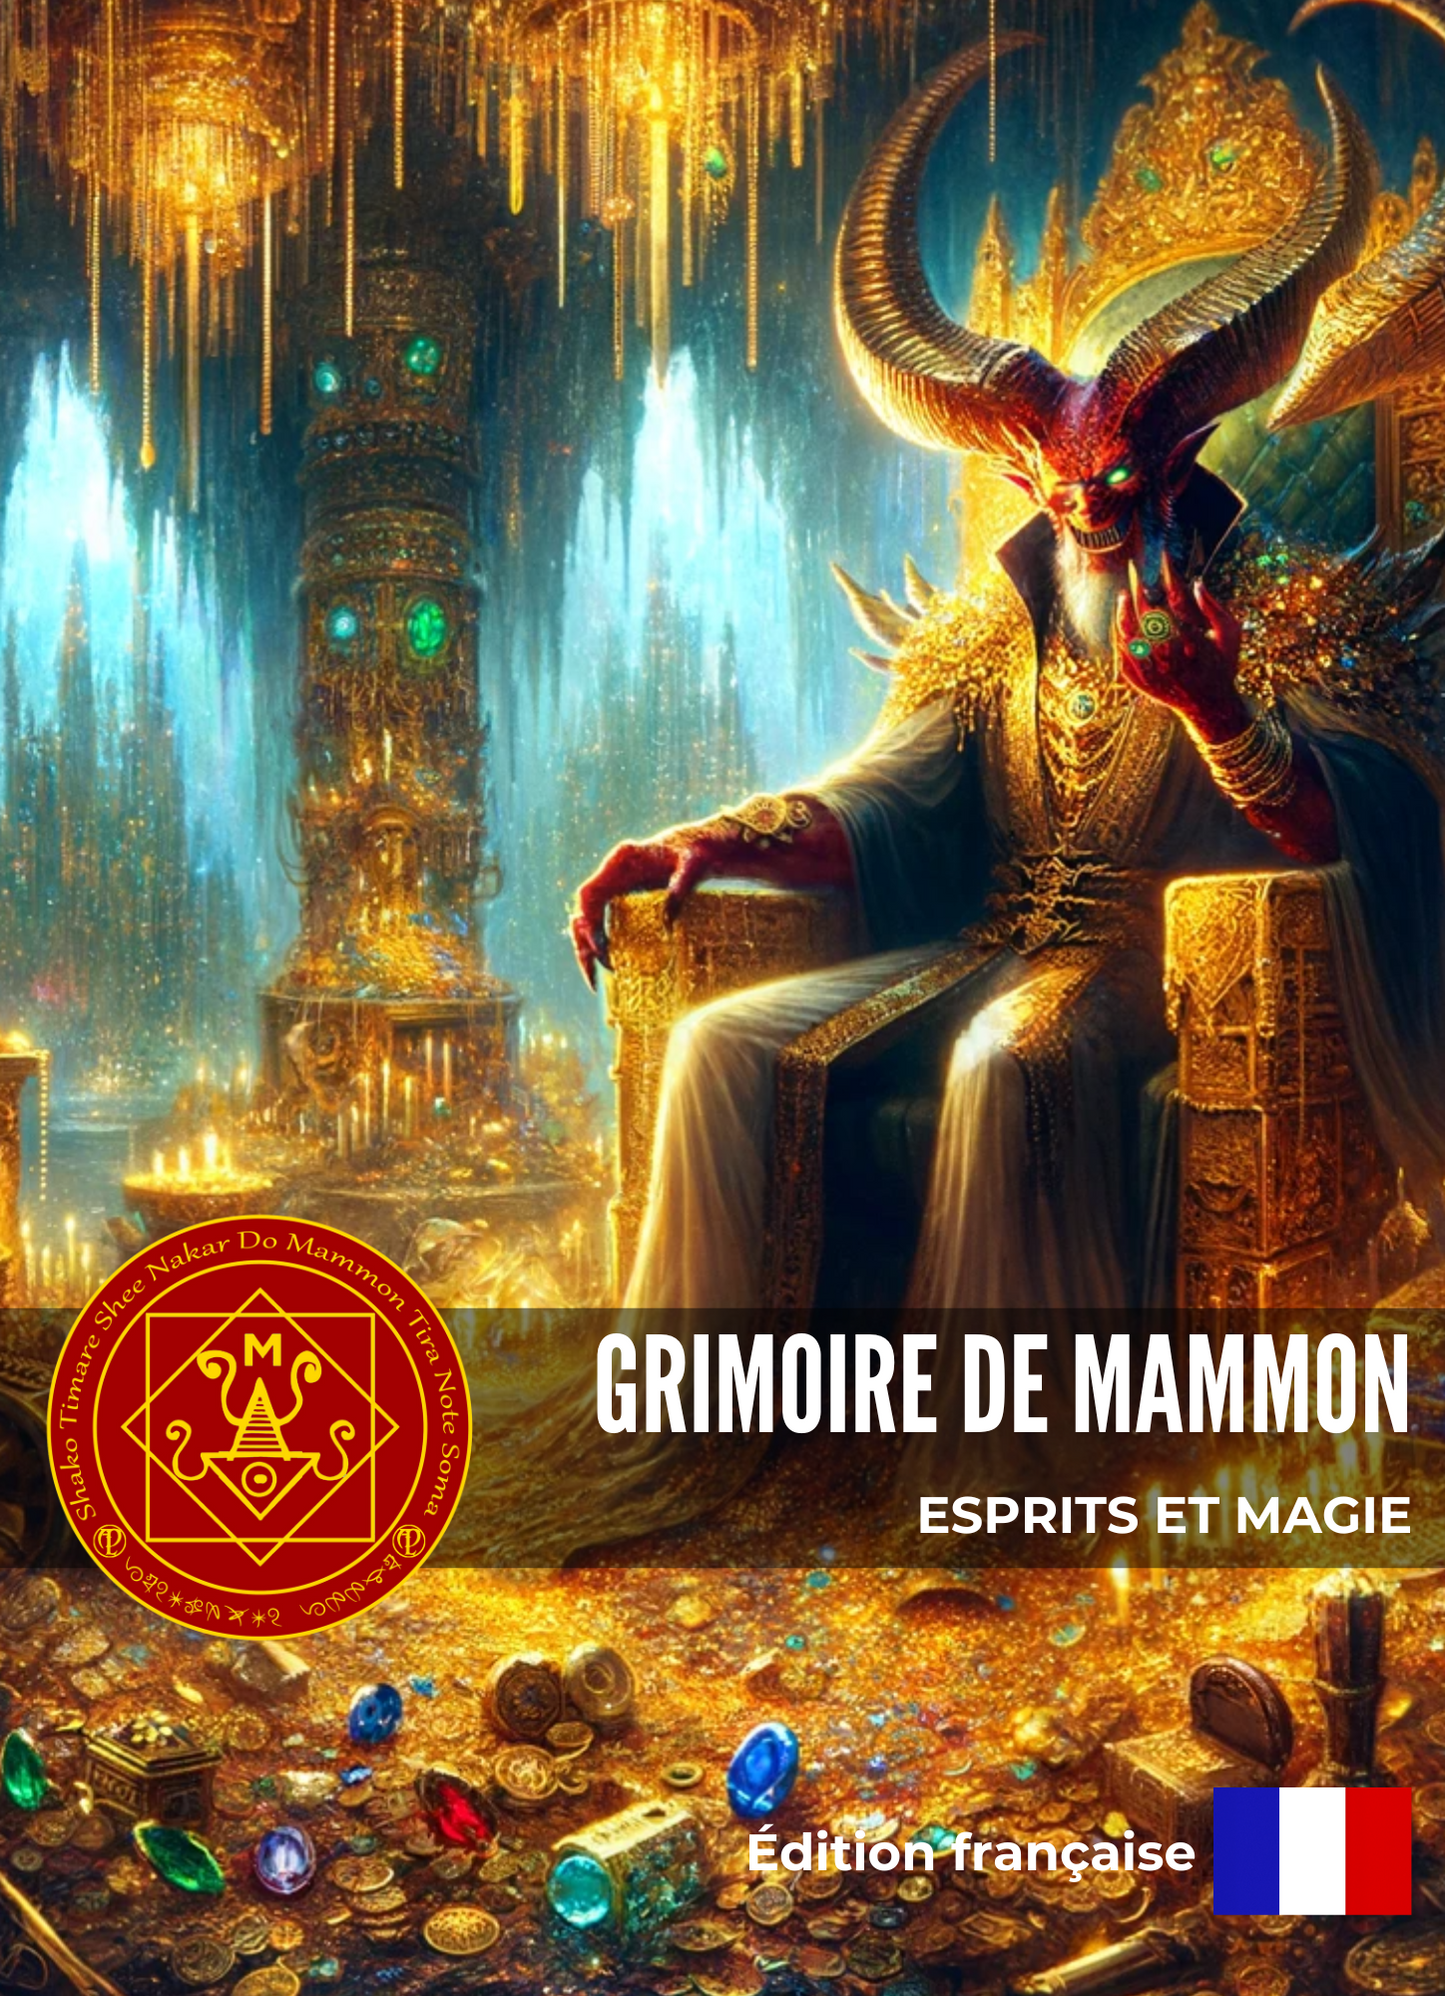 Grimoire of Mammon galdrar og helgisiðir til að fá efnislega hluti og auð - Abraxas Amulets ® Magic ♾️ Talismans ♾️ Initiations